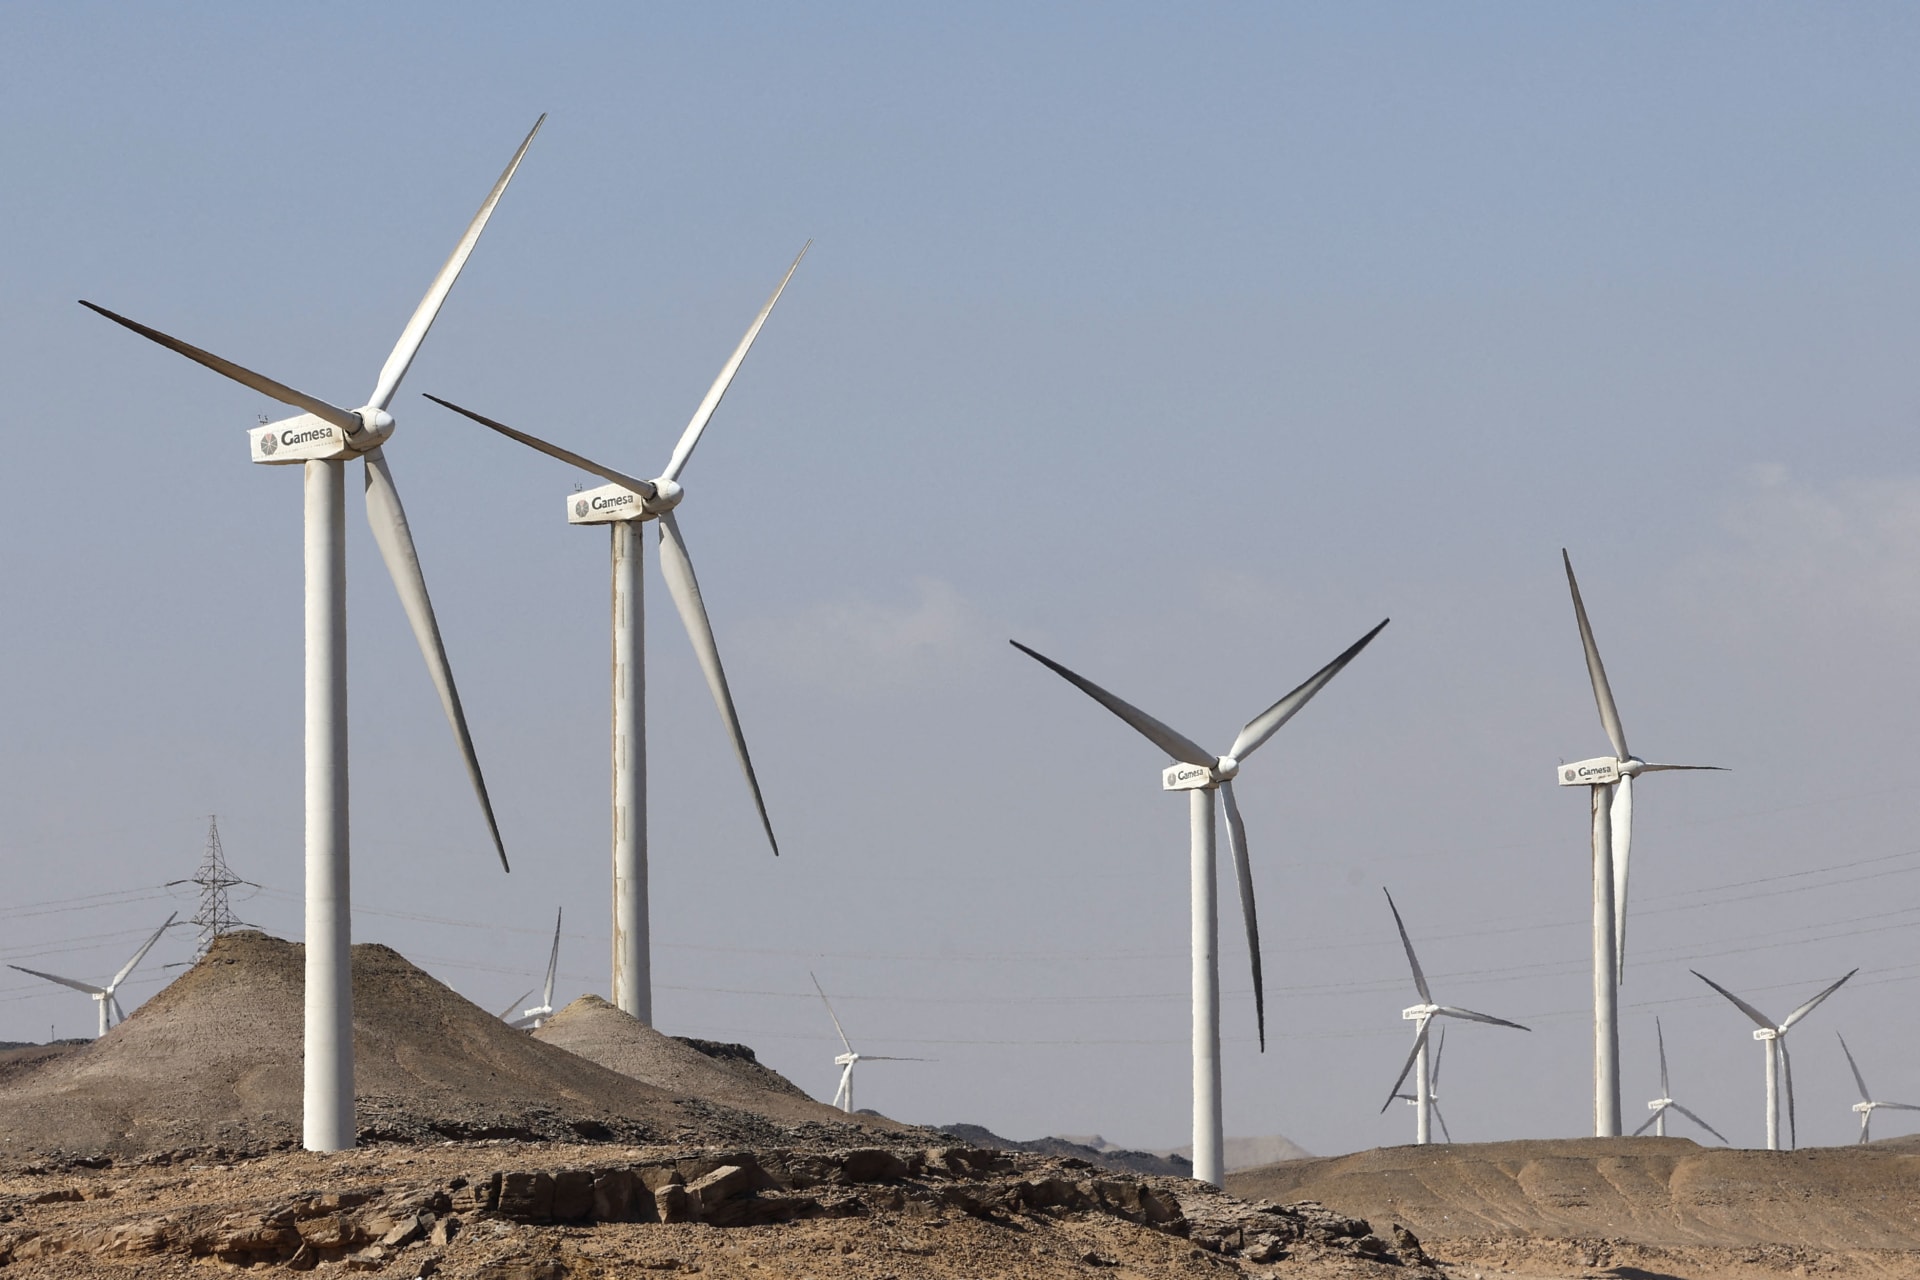  مصر تجذب استثمارات في الطاقة المتجددة بقمة المناخ.. وتشغيل أول مصنع للهيدروجين الأخضر